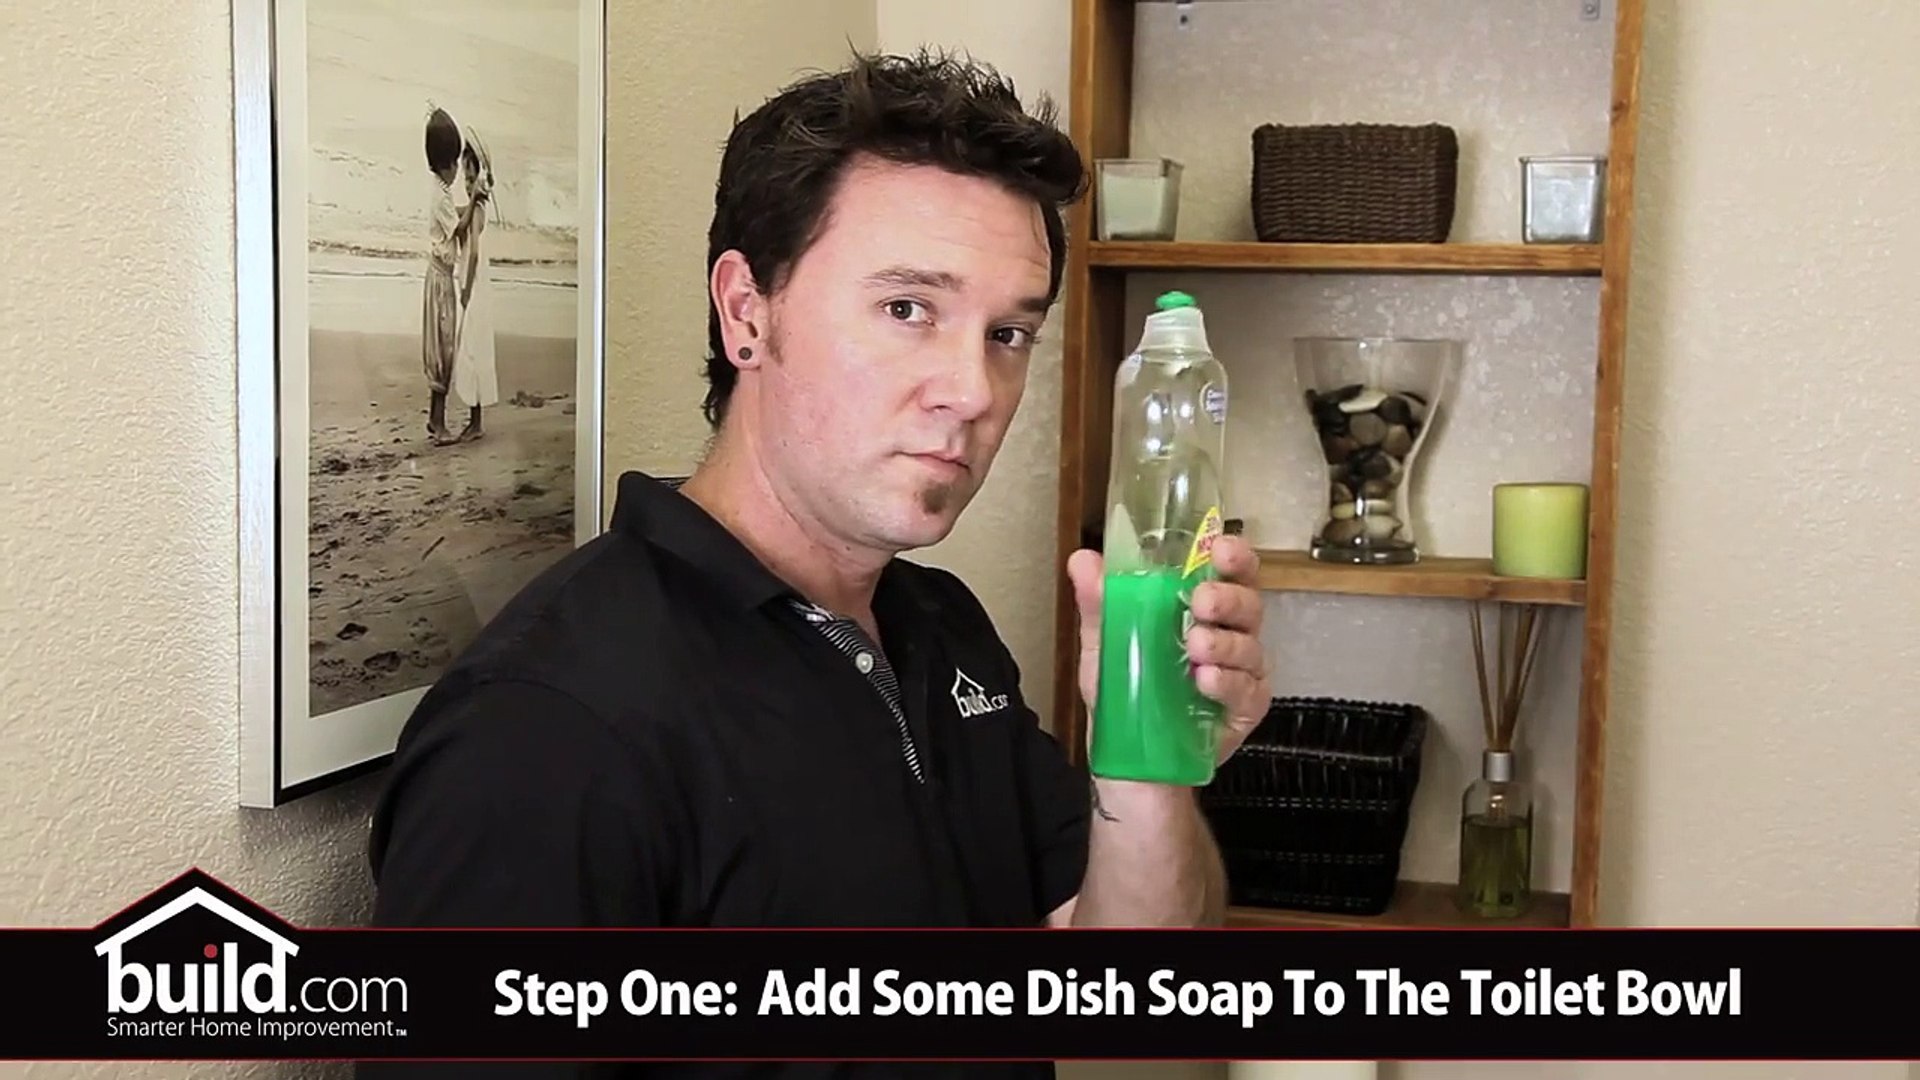 Astuce insolite (mais qui marche) : du liquide vaisselle pour déboucher les  toilettes - Vidéo Dailymotion